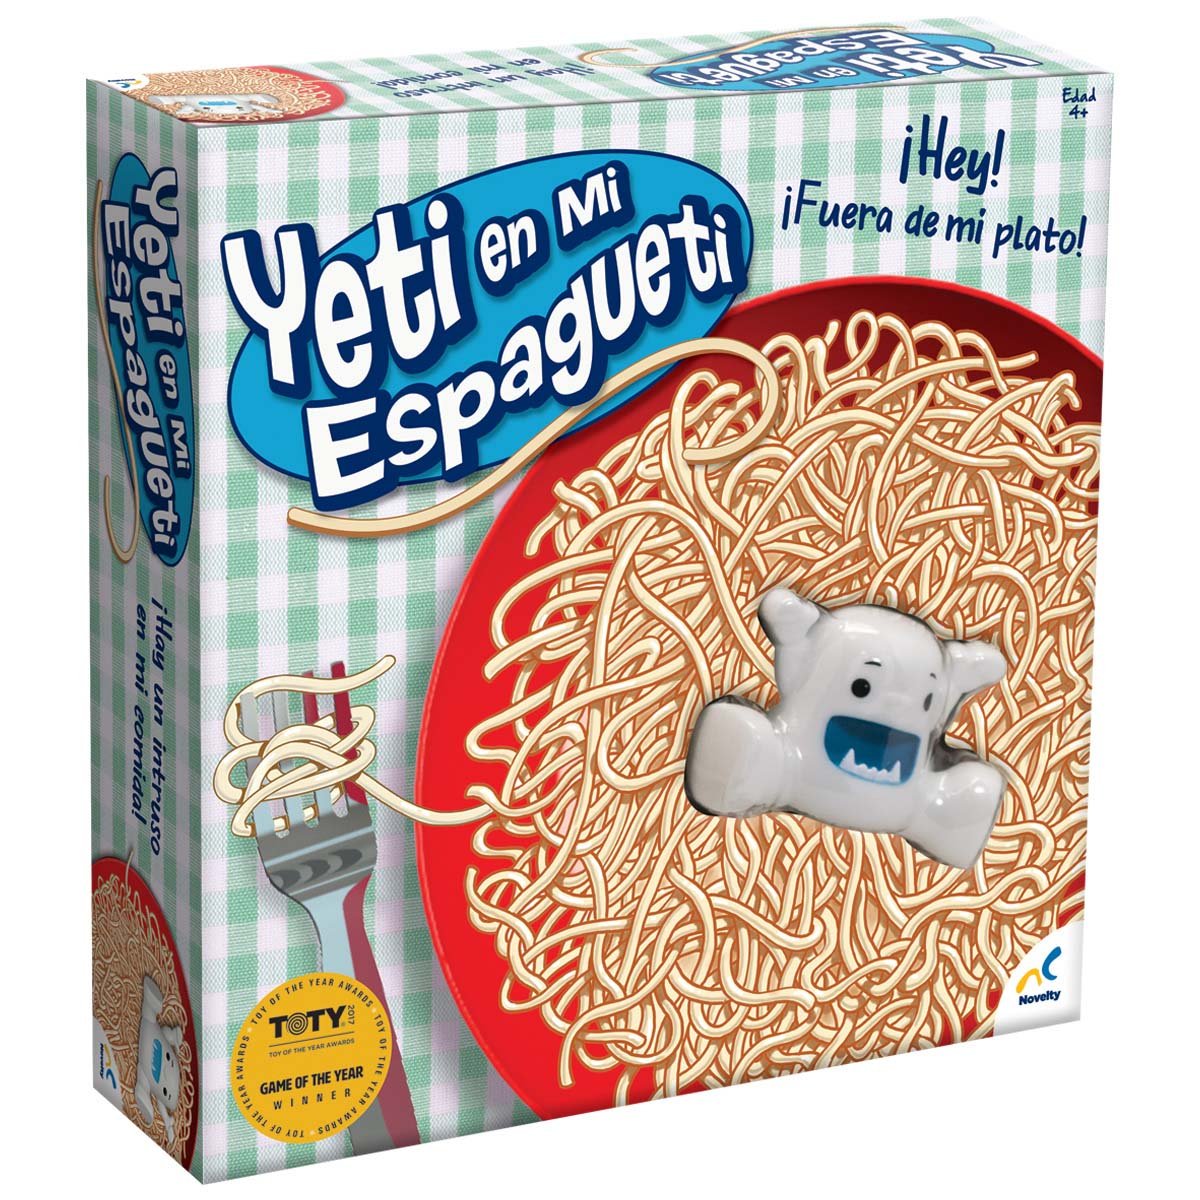 Yeti en Mi Espagueti Novelty